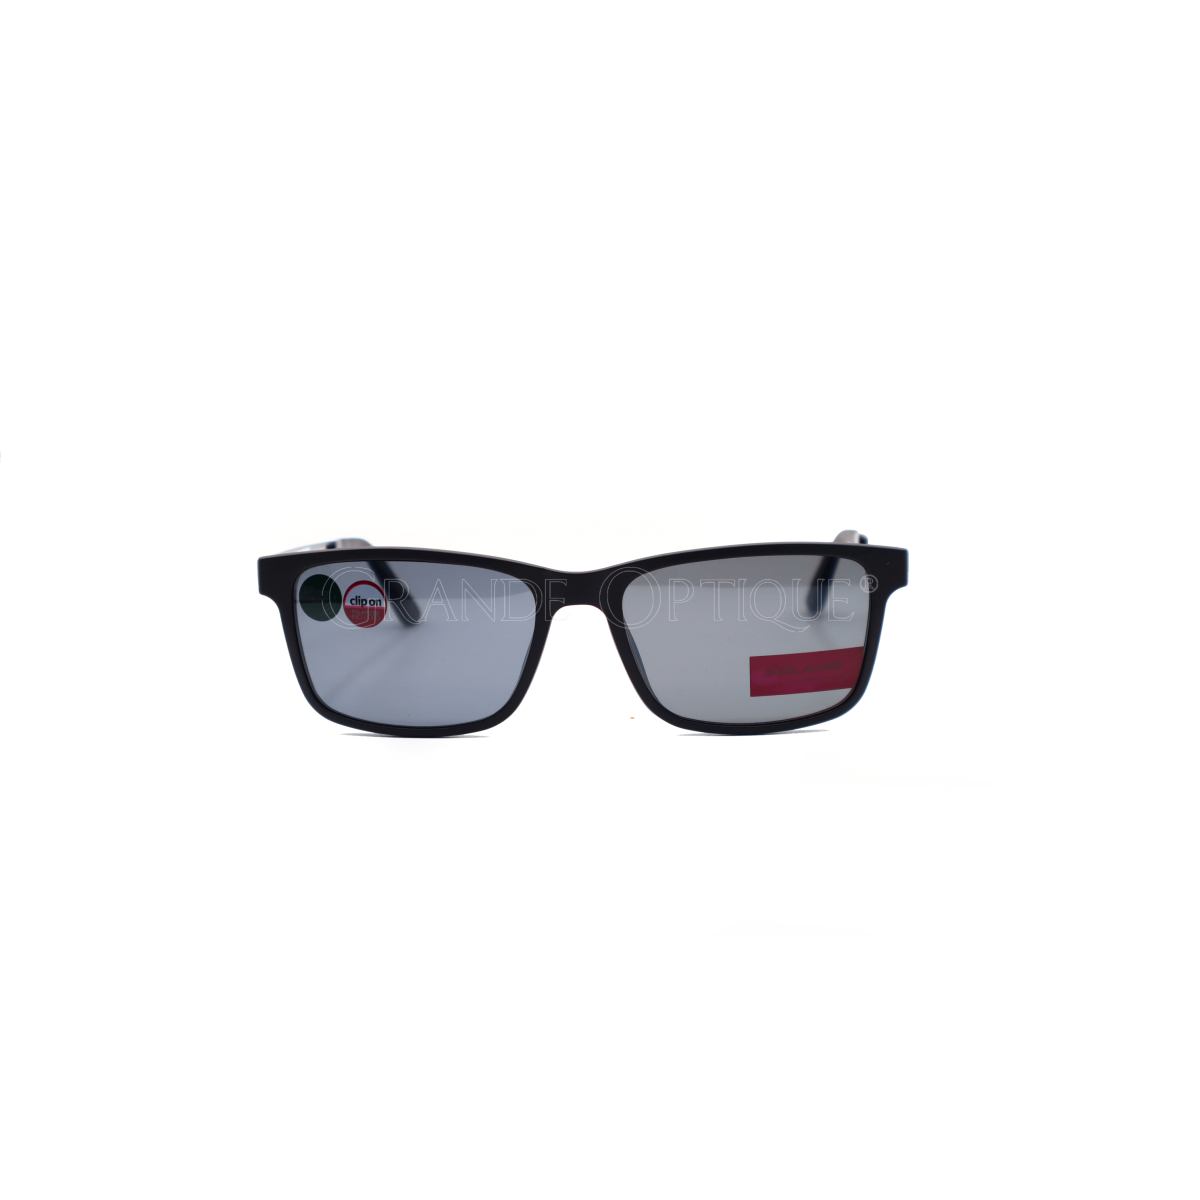 Rame  de ochelari clip on Solano CL90047A